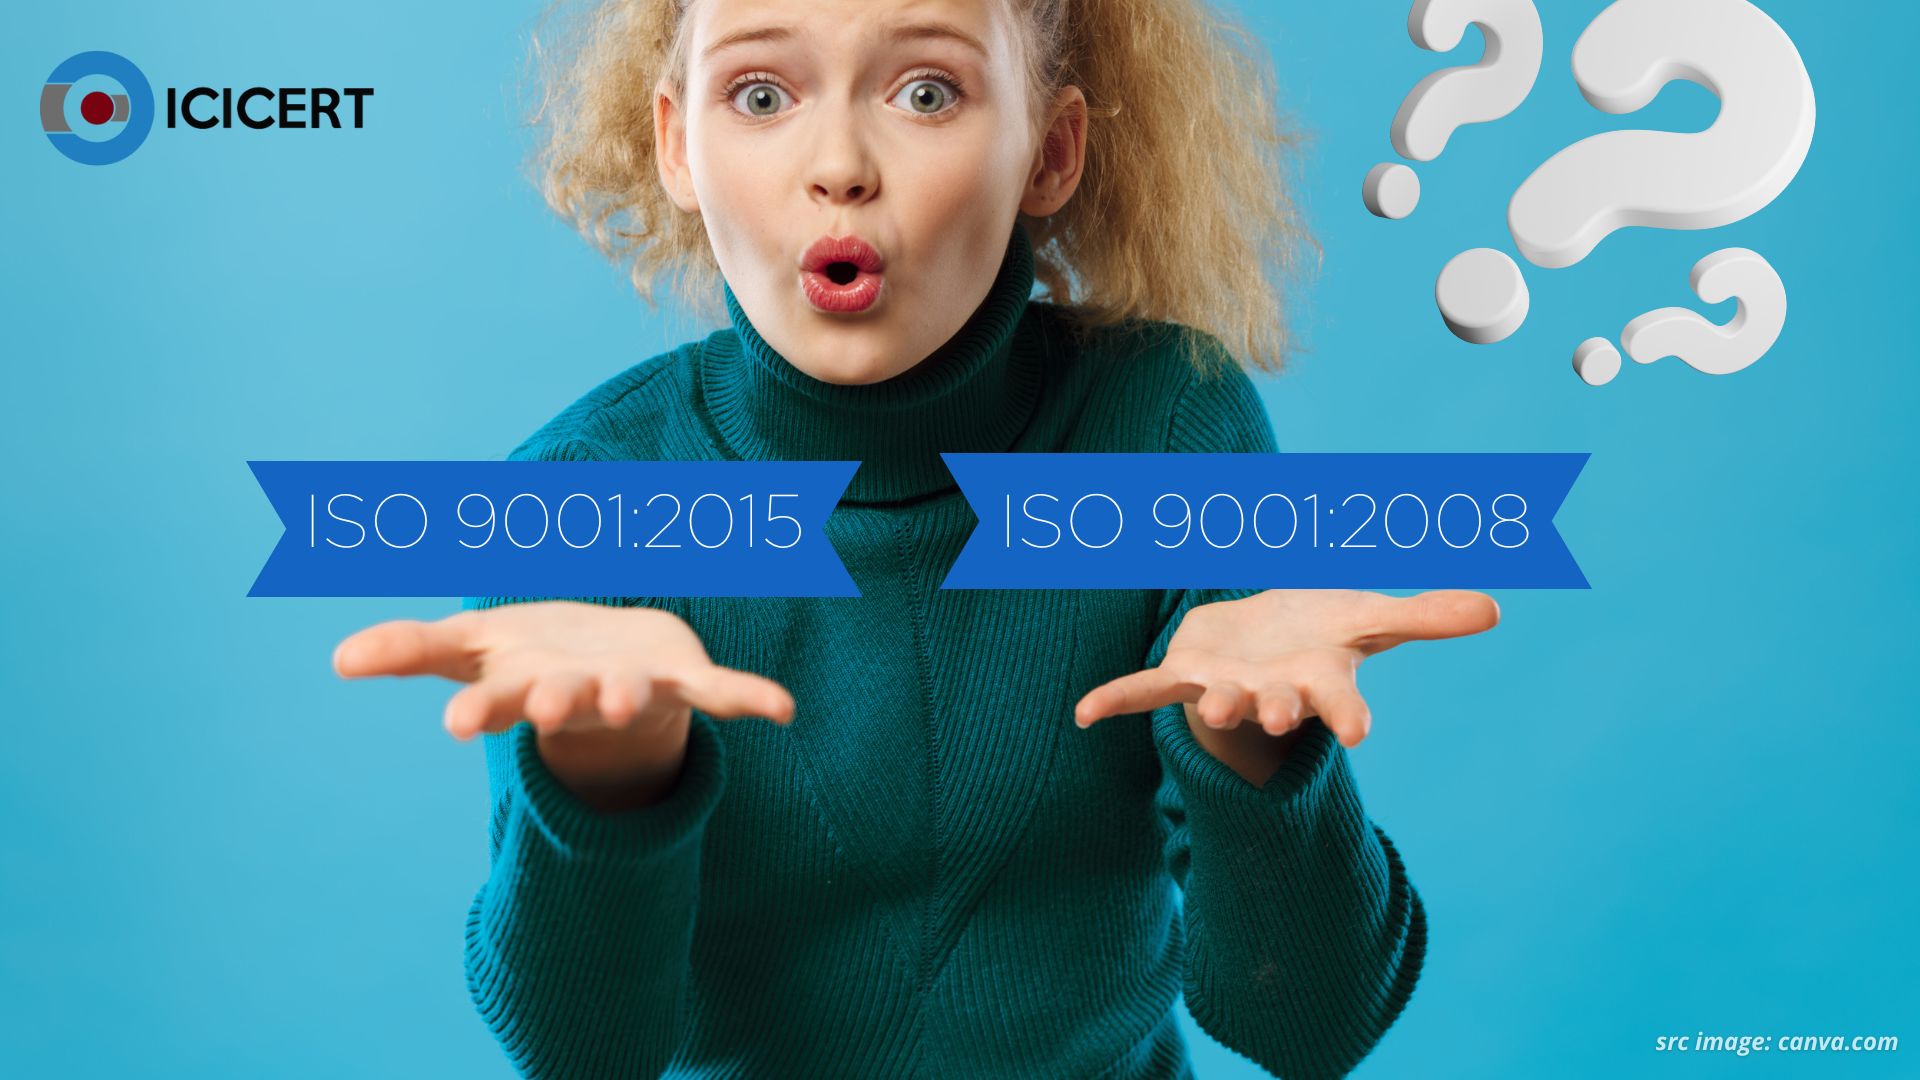 Perbedaan Utama ISO 9001:2015 dan ISO 9001:2008 yang Perlu Dipahami